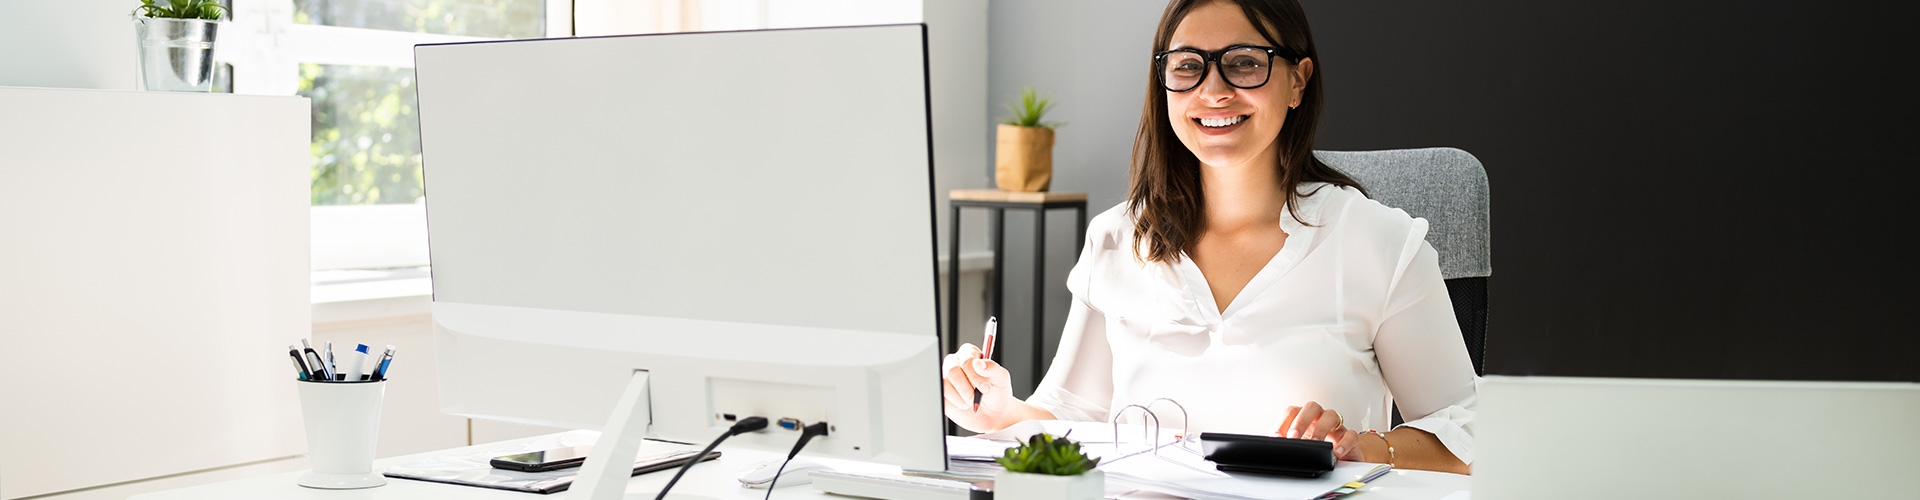 Financiamiento inmediato para empresas a través de Cuenta de crédito - Chica vestida de camisa blanca y gafas negras sujetando un boli, trabajando en la oficina al frente de un ordenador